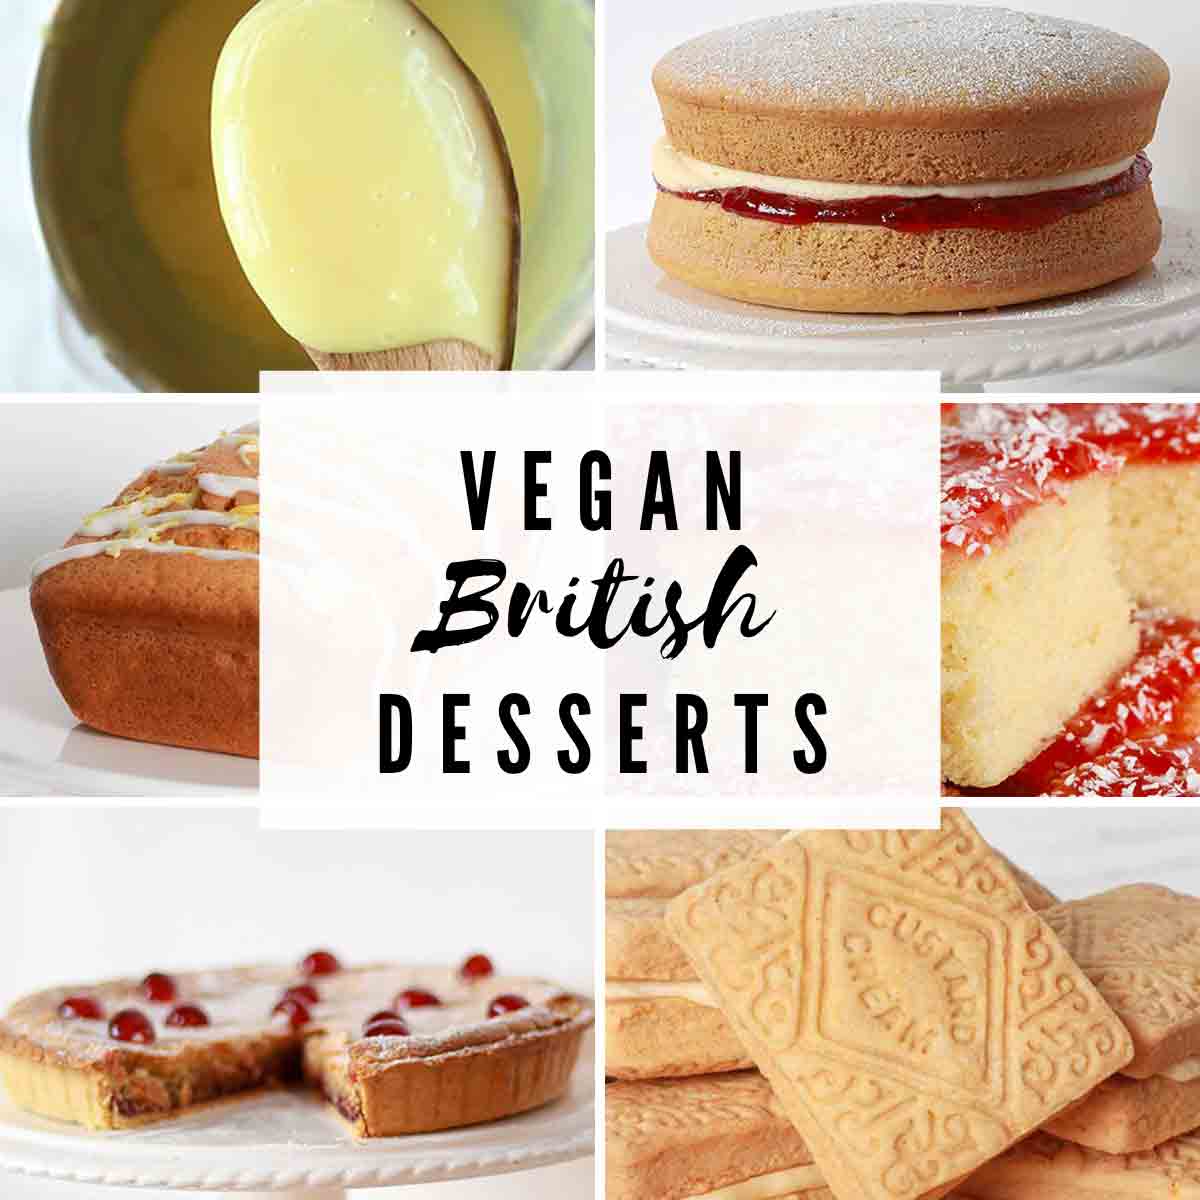 6 Images Of Vegan British Desserts